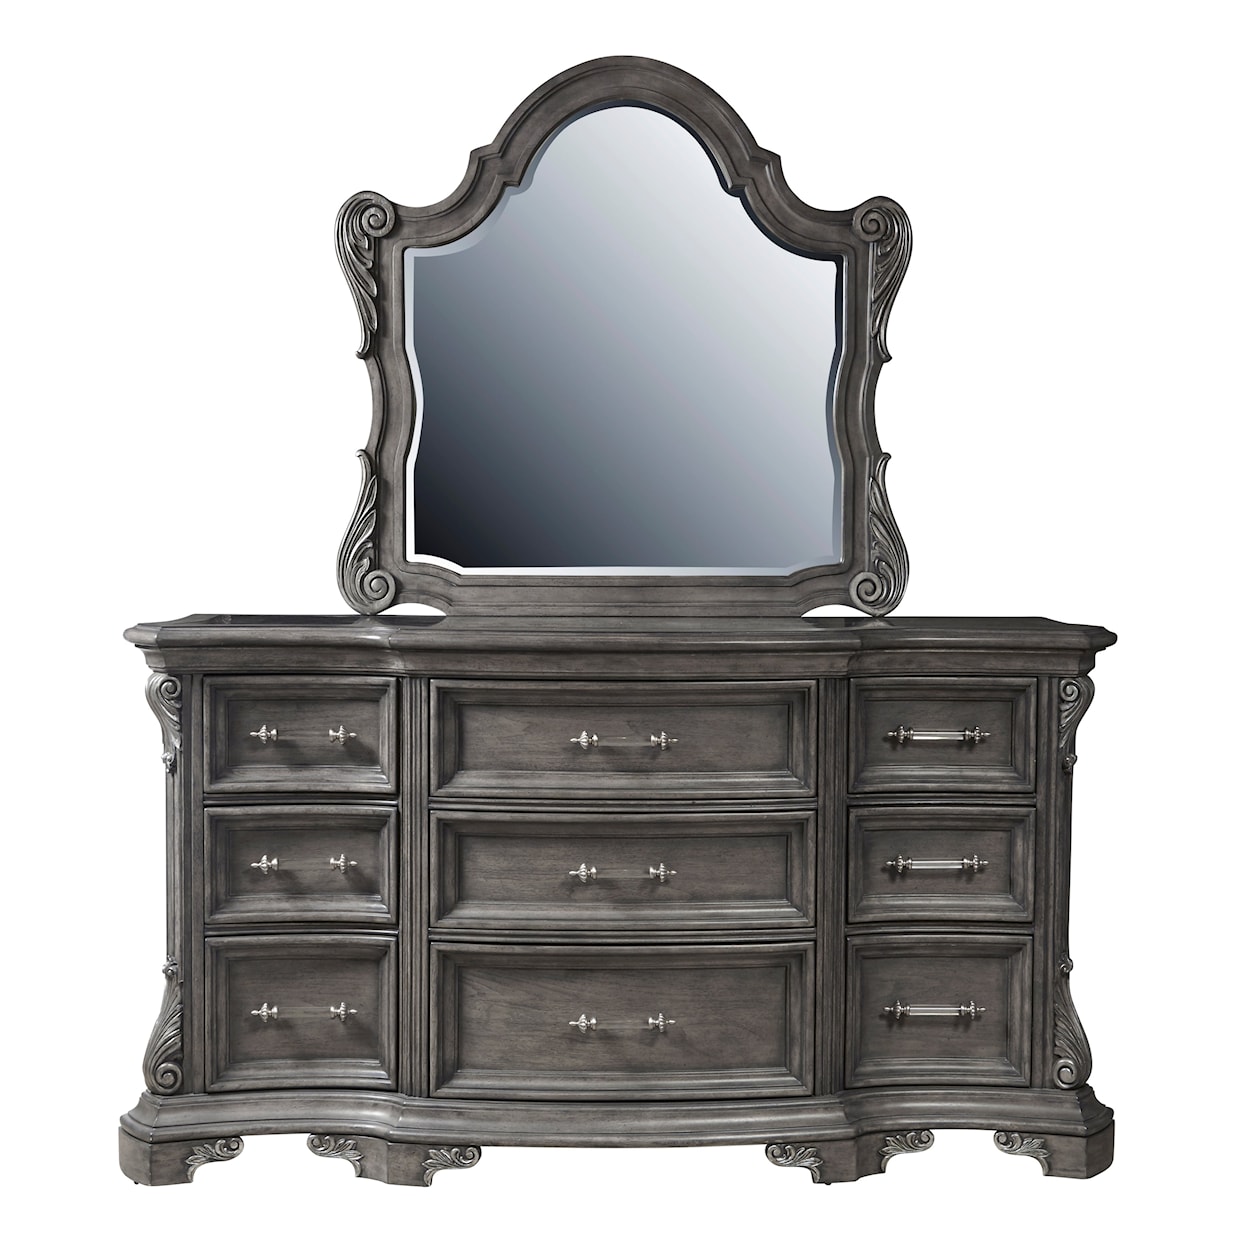 Pulaski Furniture Vivian Dresser with Mirror